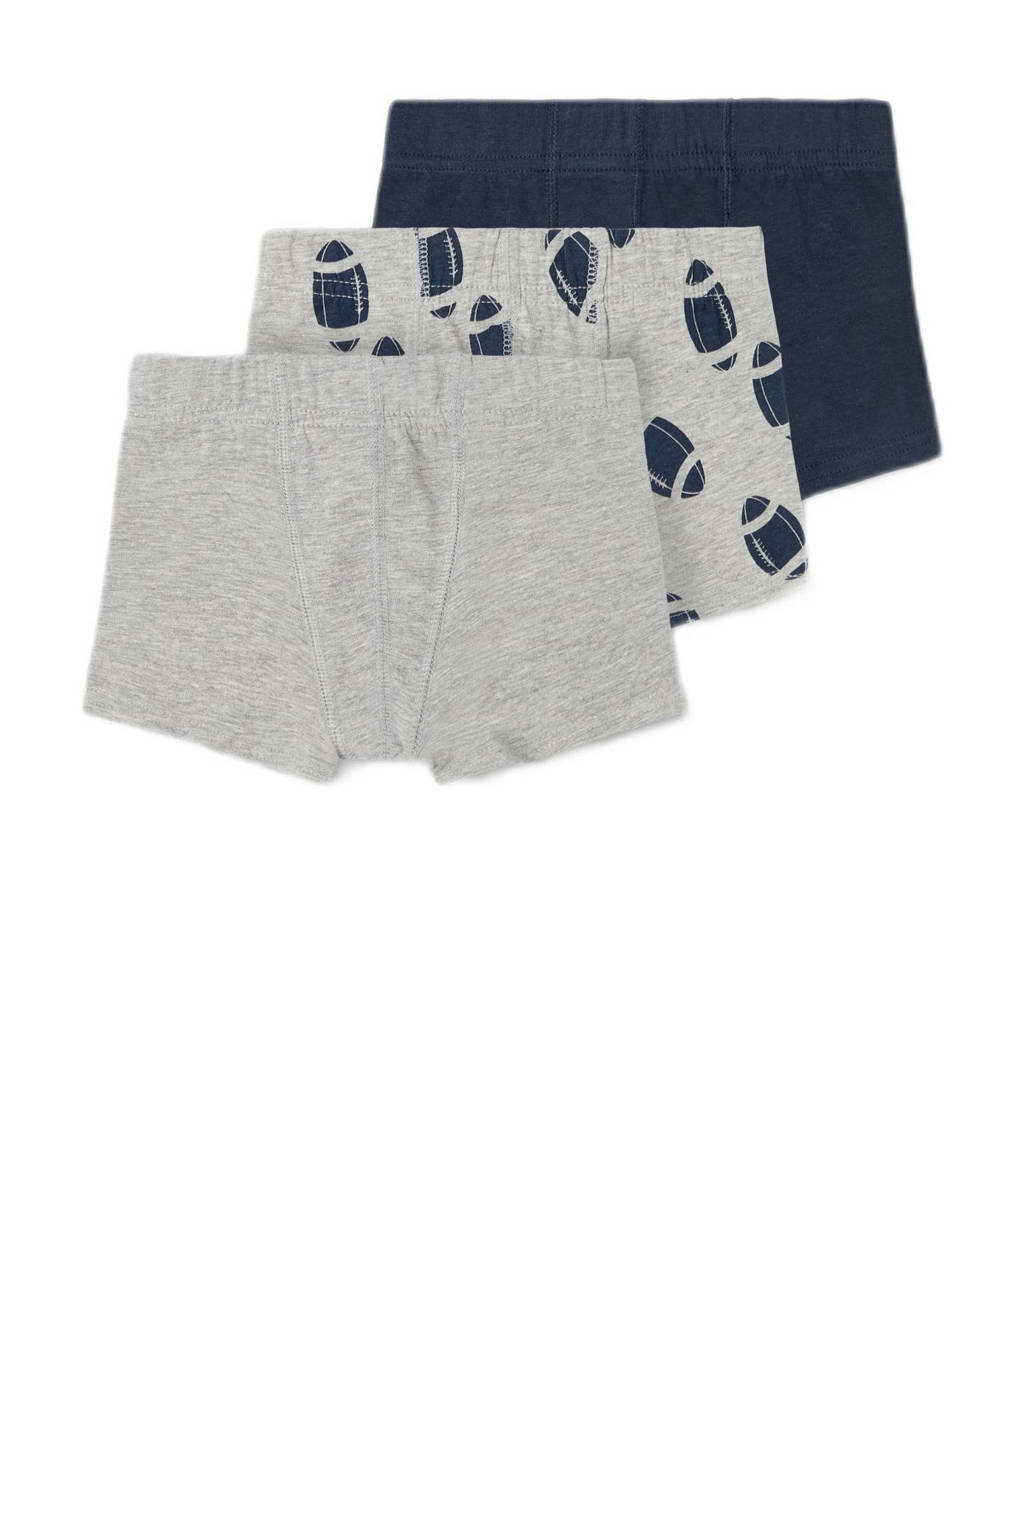 boxerhort - set van 3 grijs melange/donkerblauw